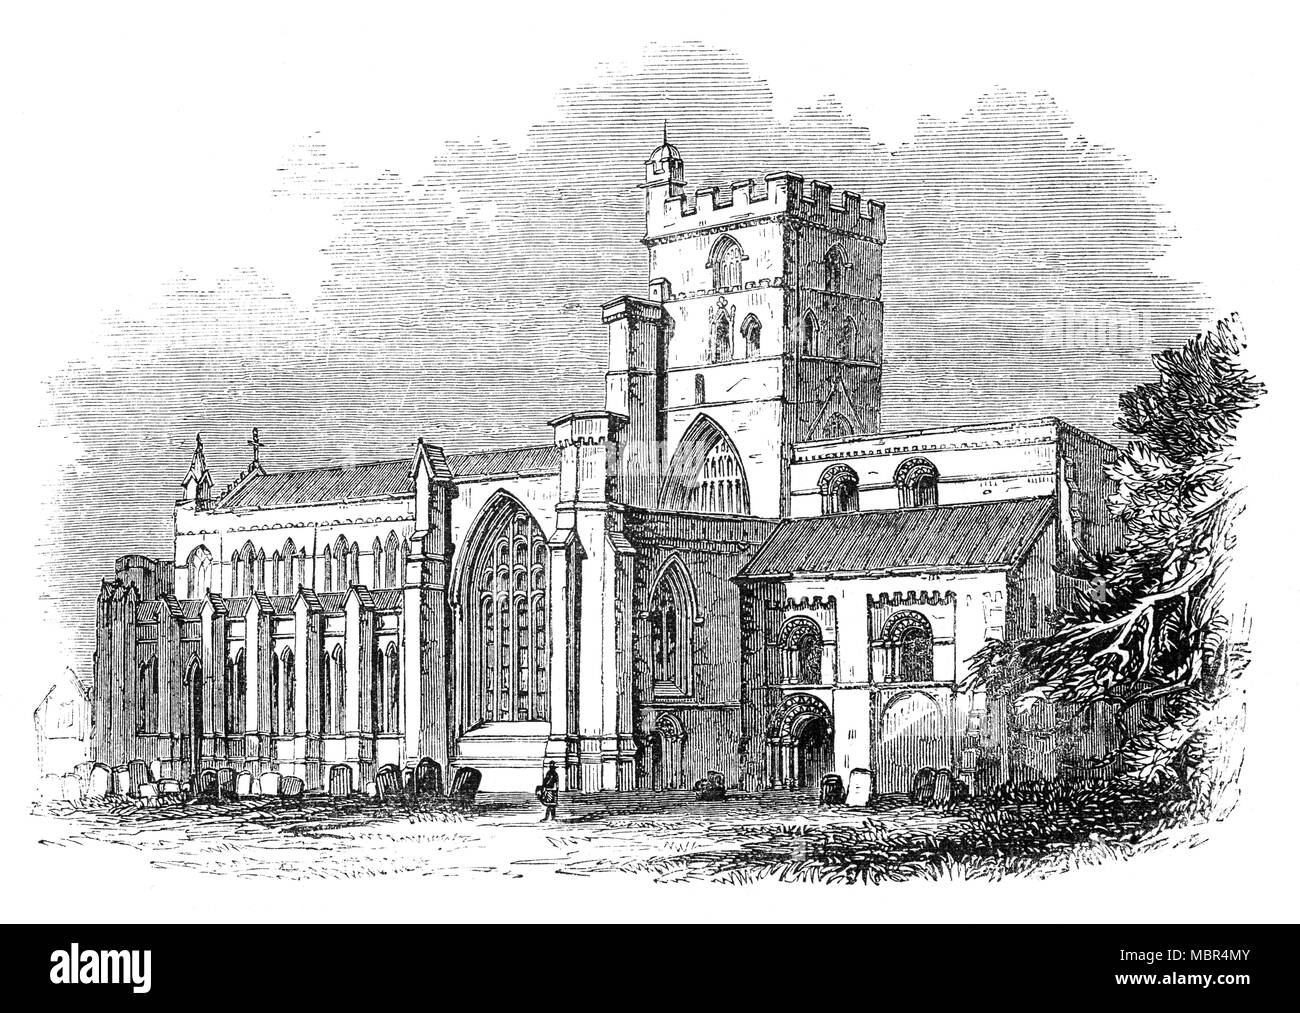 L'église cathédrale de la Sainte et indivisible Trinité, autrement appelé cathédrale de Carlisle, est situé dans la région de Carlisle, Cumbria, au nord ouest de l'Angleterre. Elle a été fondée comme un prieuré Augustin et est devenue une cathédrale en 1133. Conçu en style gothique normand, c'est le deuxième plus petit (après Oxford), de l'Angleterre, l'ancienne cathédrale. Banque D'Images